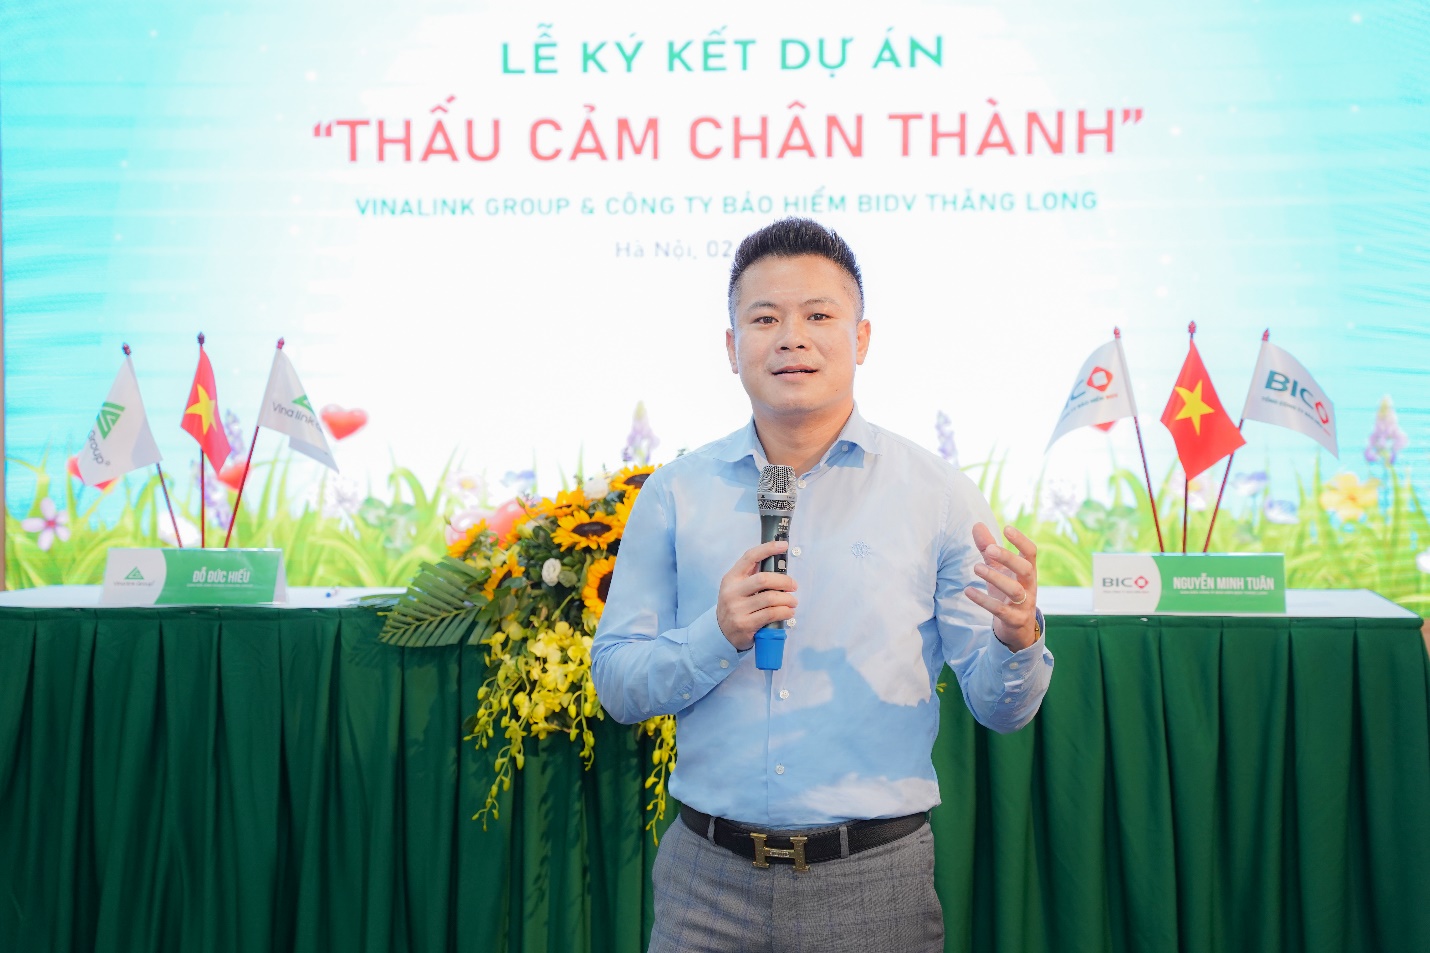 Vinalink Group và Bảo hiểm BIDV Thăng Long ký kết hợp tác chiến lược: Chung tay xây dựng “cộng đồng khỏe, đẹp, giàu” - 1